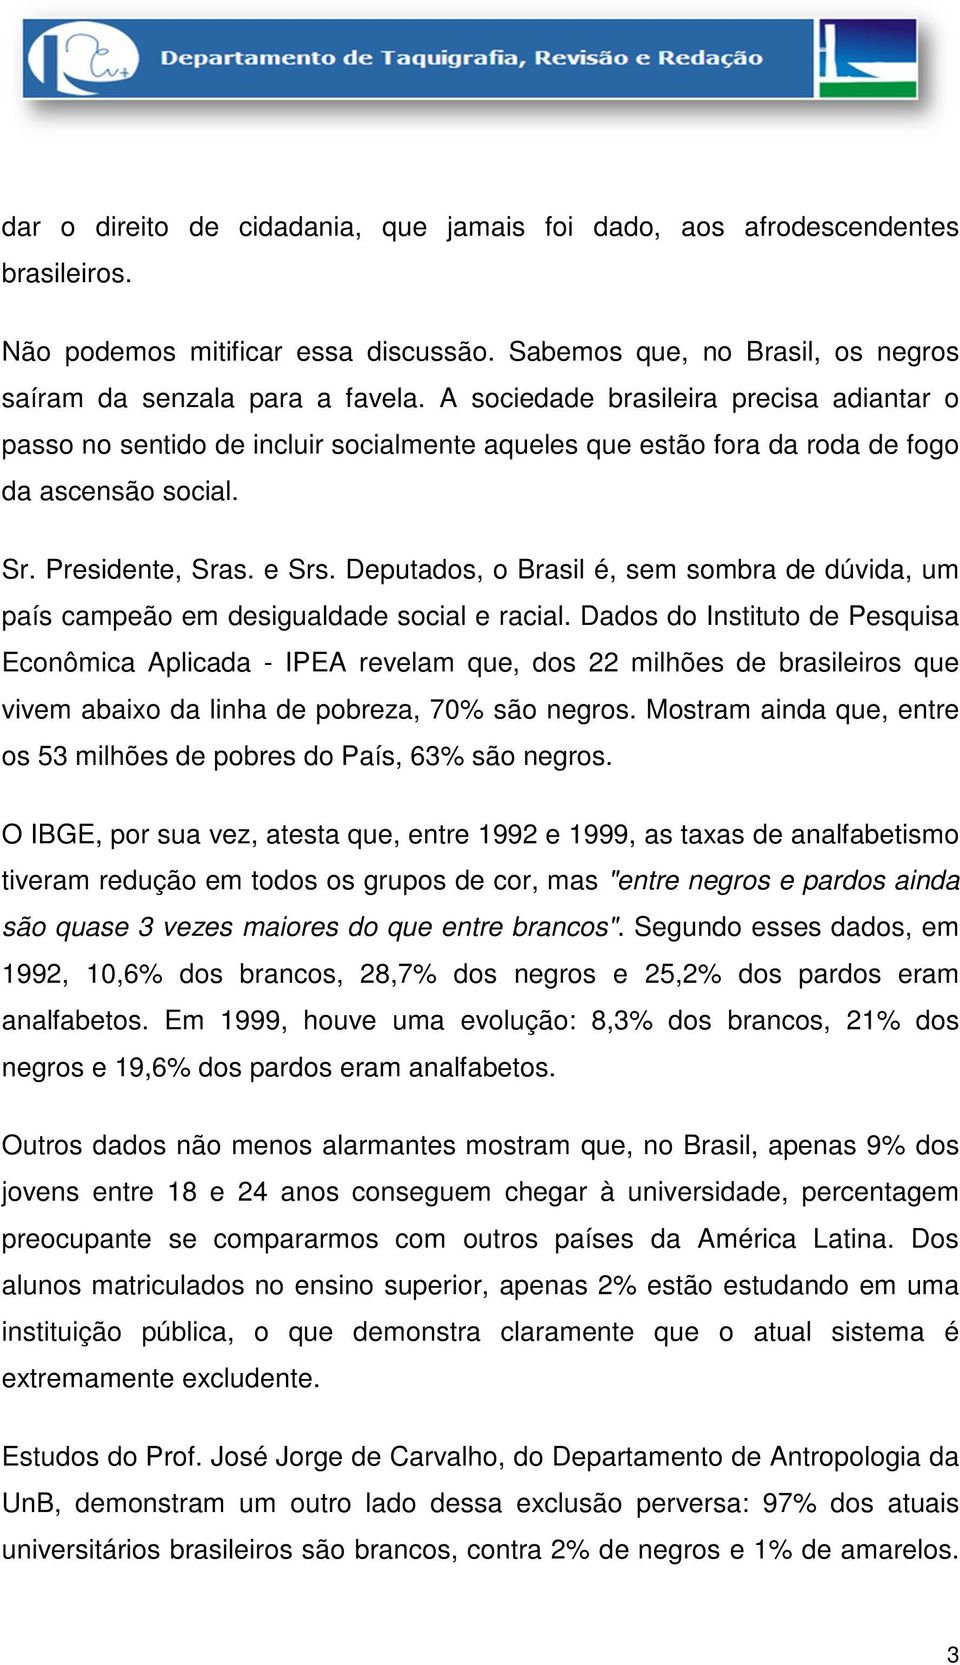 Deputados, o Brasil é, sem sombra de dúvida, um país campeão em desigualdade social e racial.